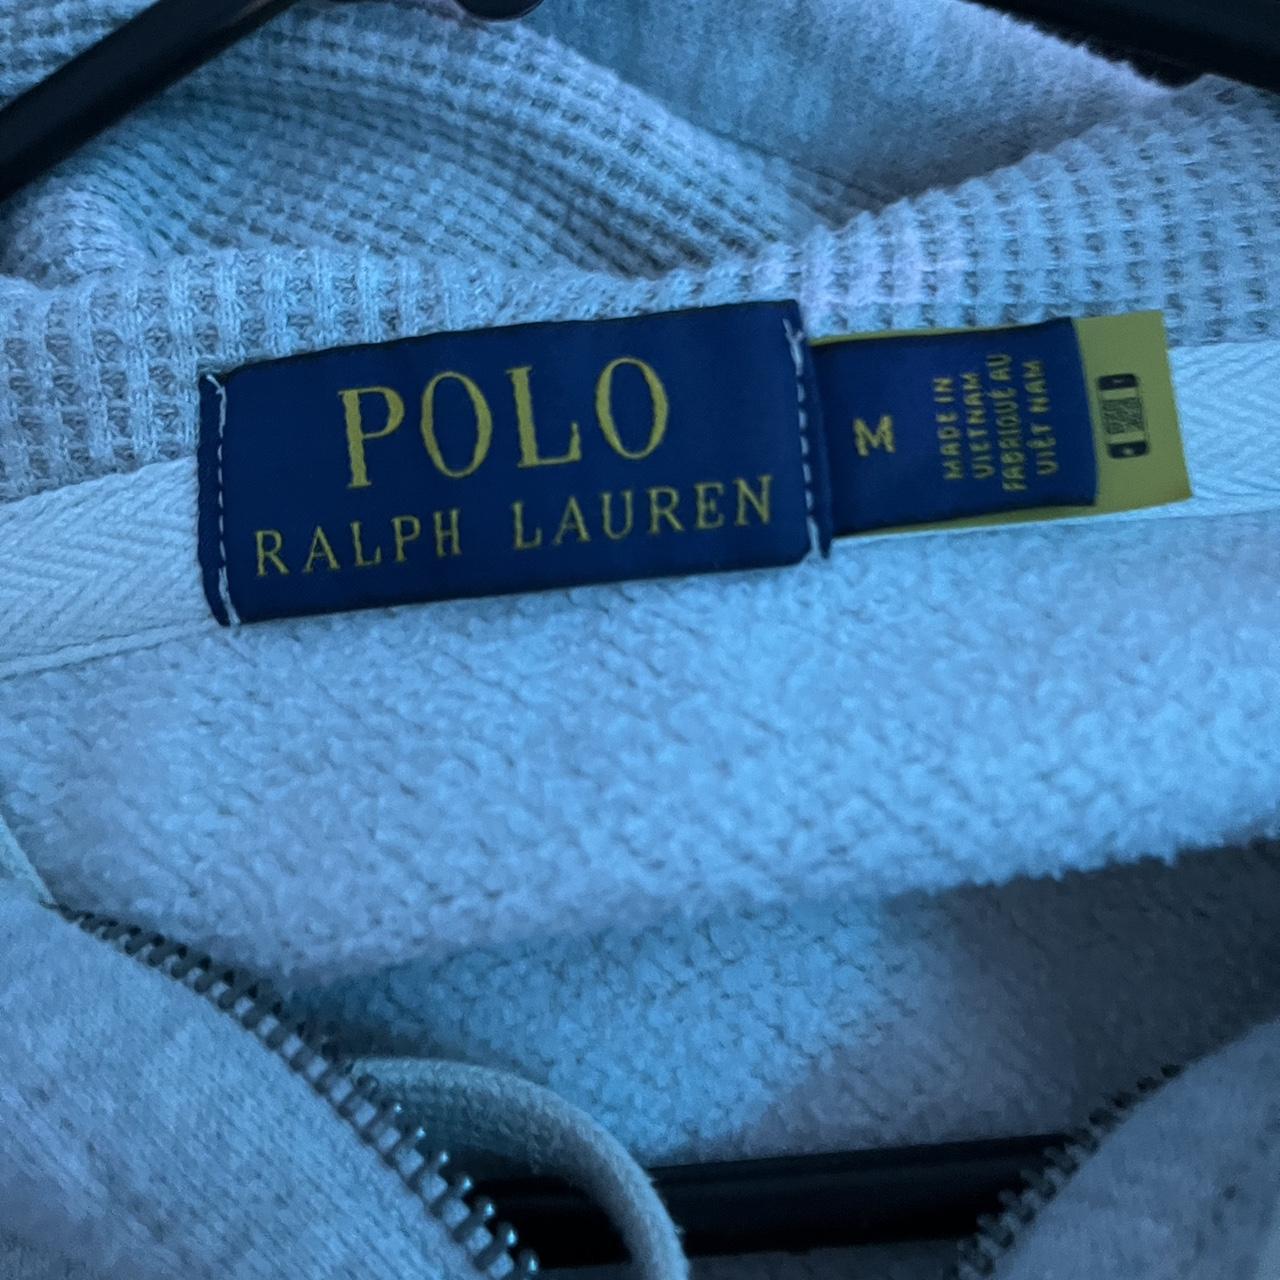 polo Ralph Lauren zip up hoodie size medium worn... - Depop